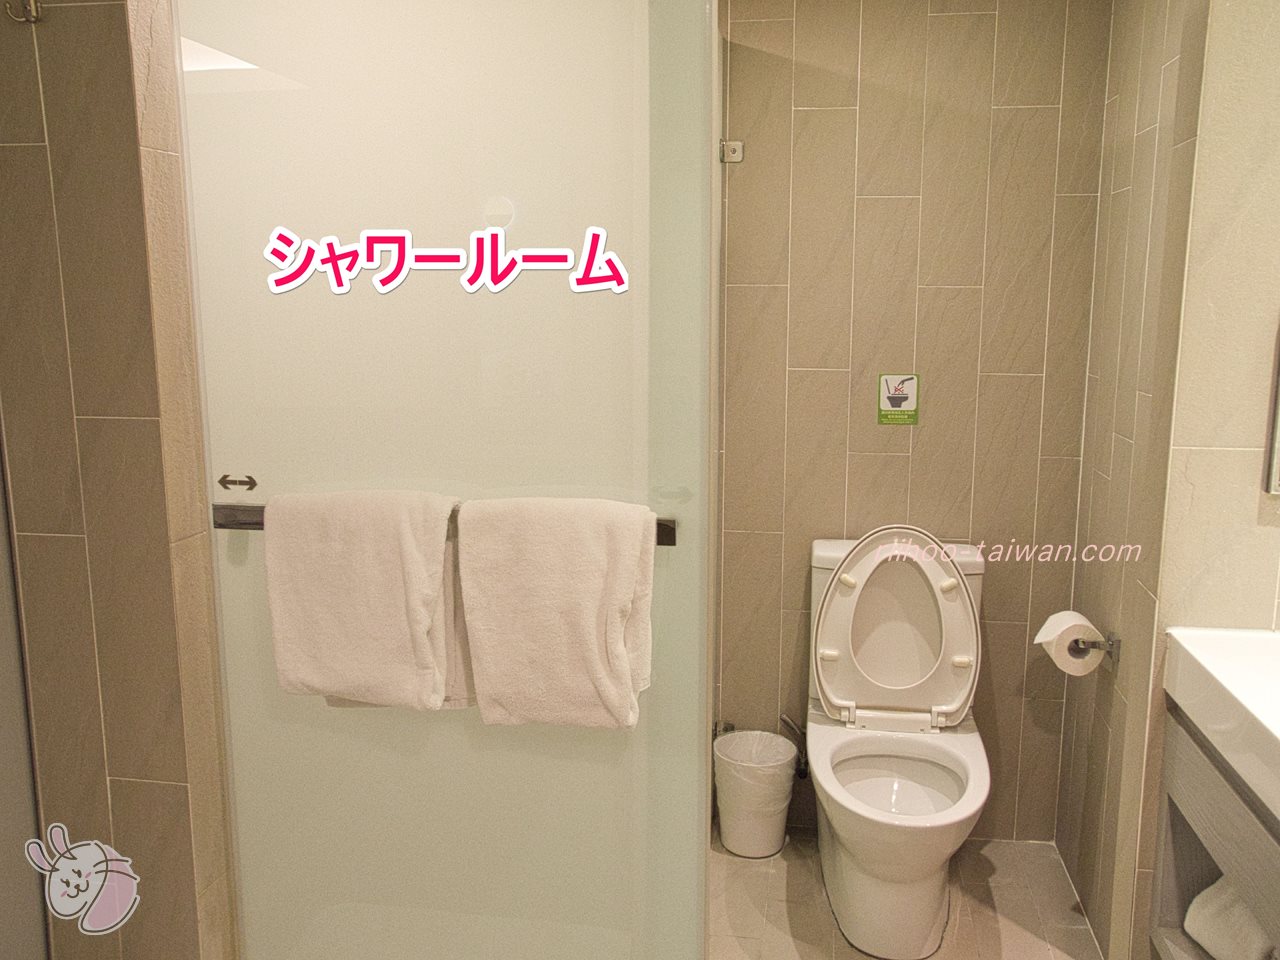 高雄FXイン富驛商旅
トイレと、シャワールームが隣り合って設置